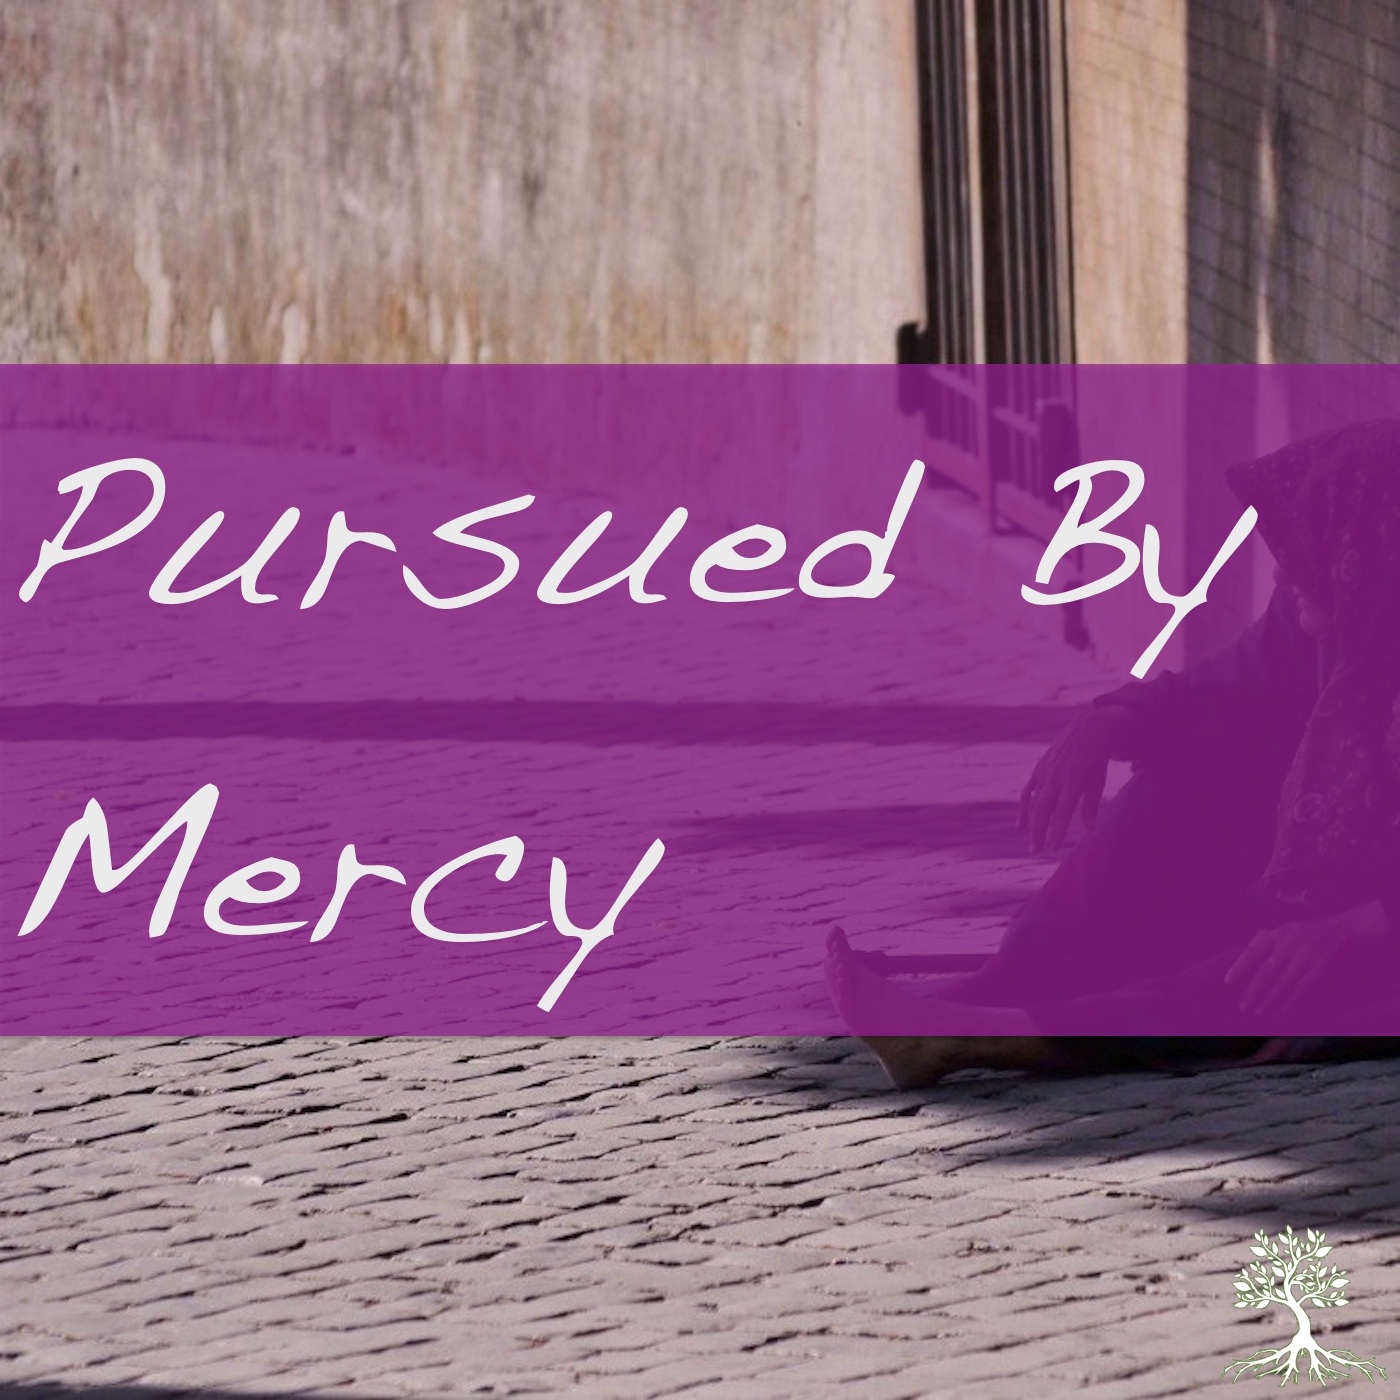 Pursued By Mercy (Chad Brekke 4/22/18)